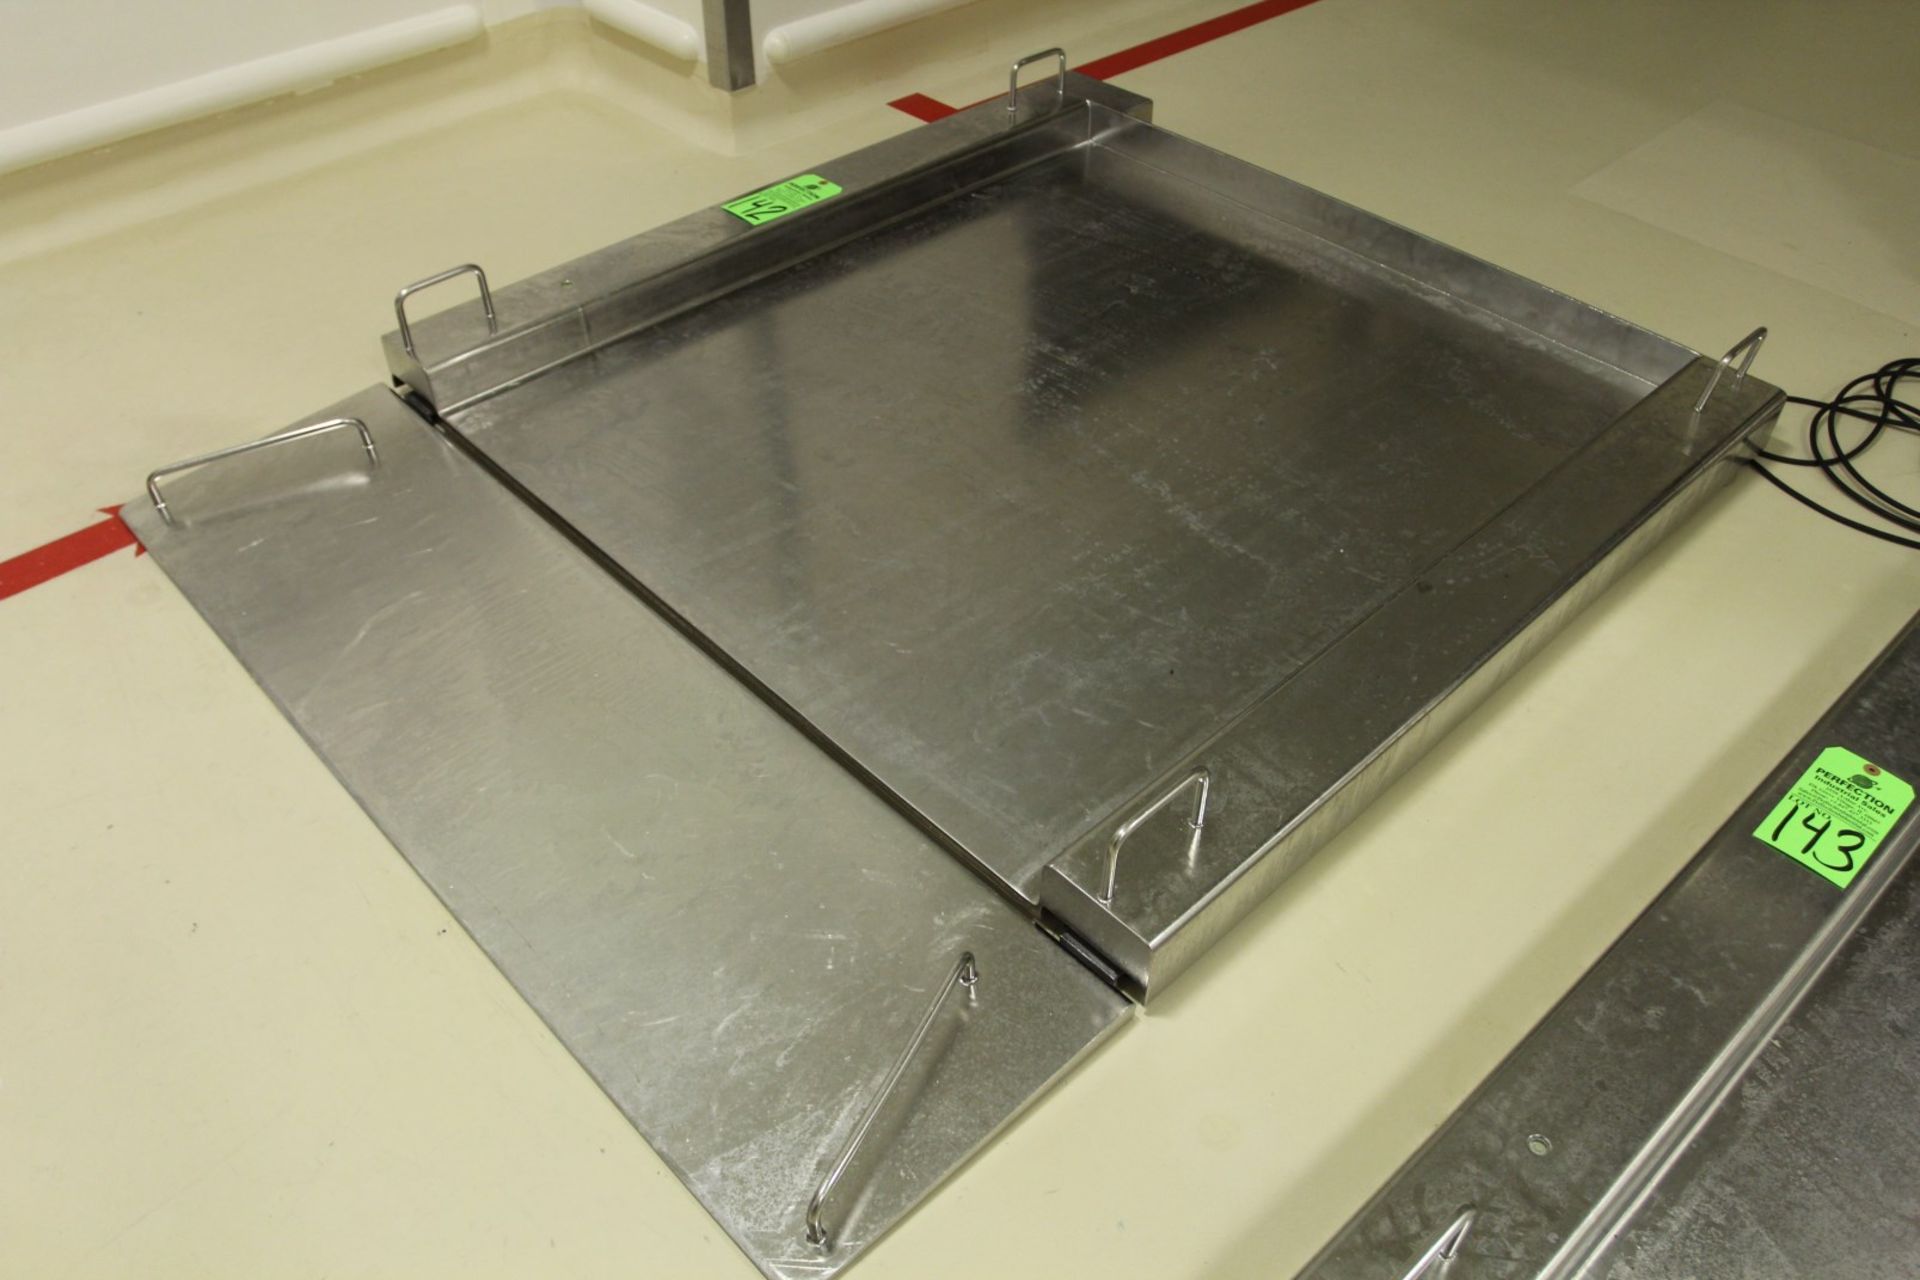 1500 kg Sartorius Stainless Steel Floor Scale, s/n na, 115cm x 100cm - Image 2 of 3